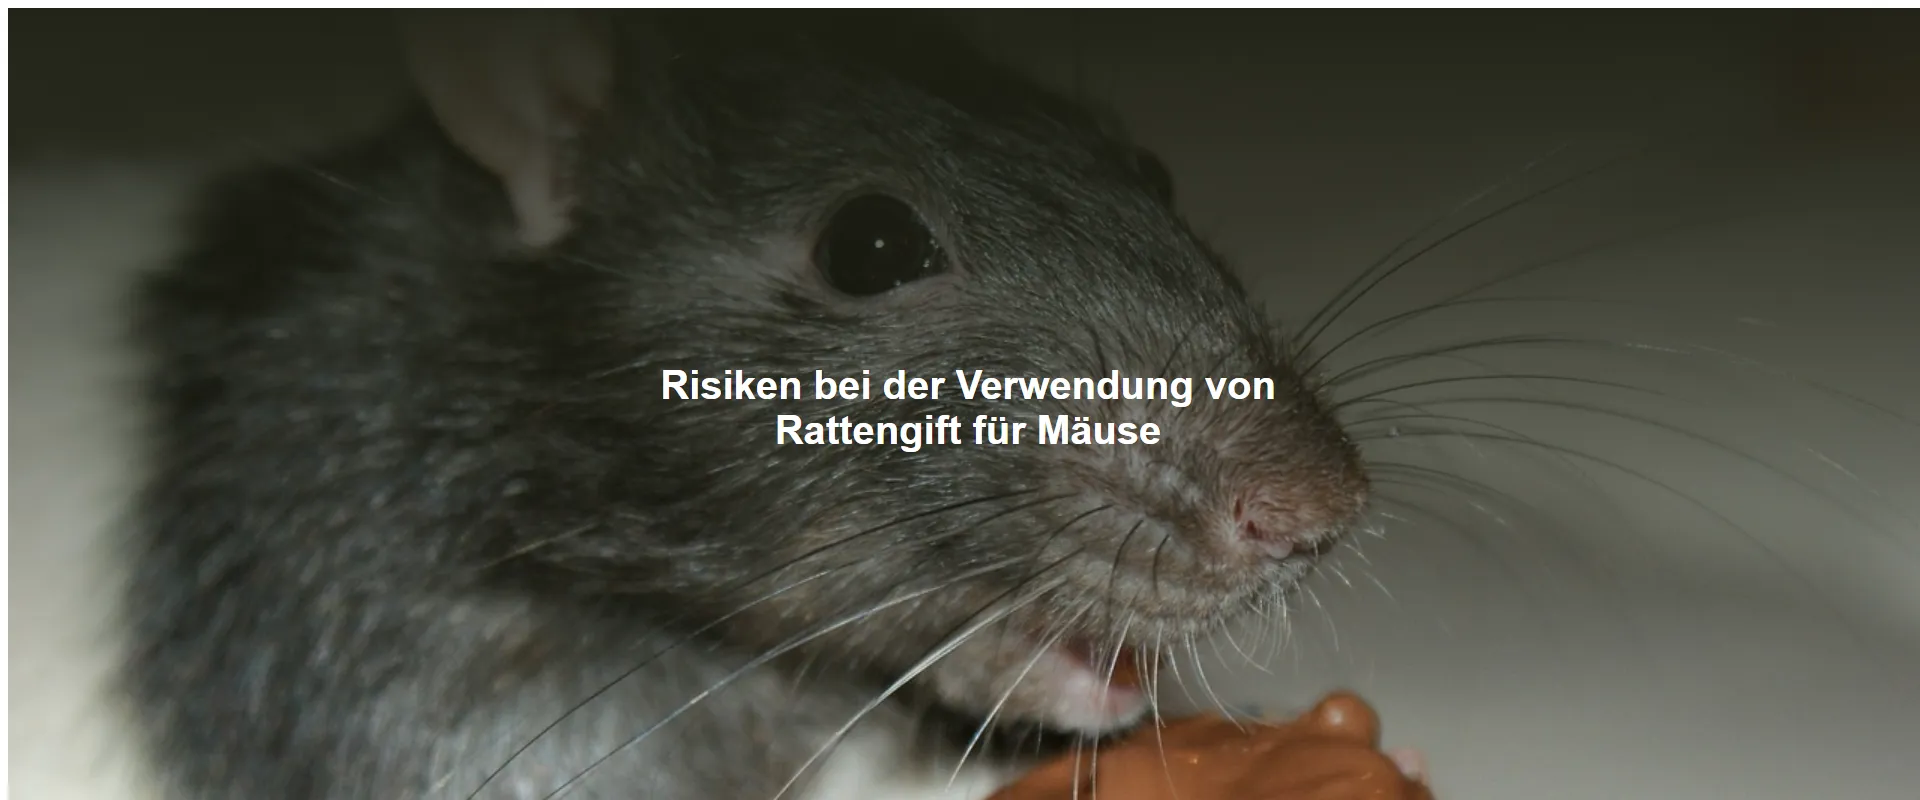 Risiken bei der Verwendung von Rattengift für Mäuse